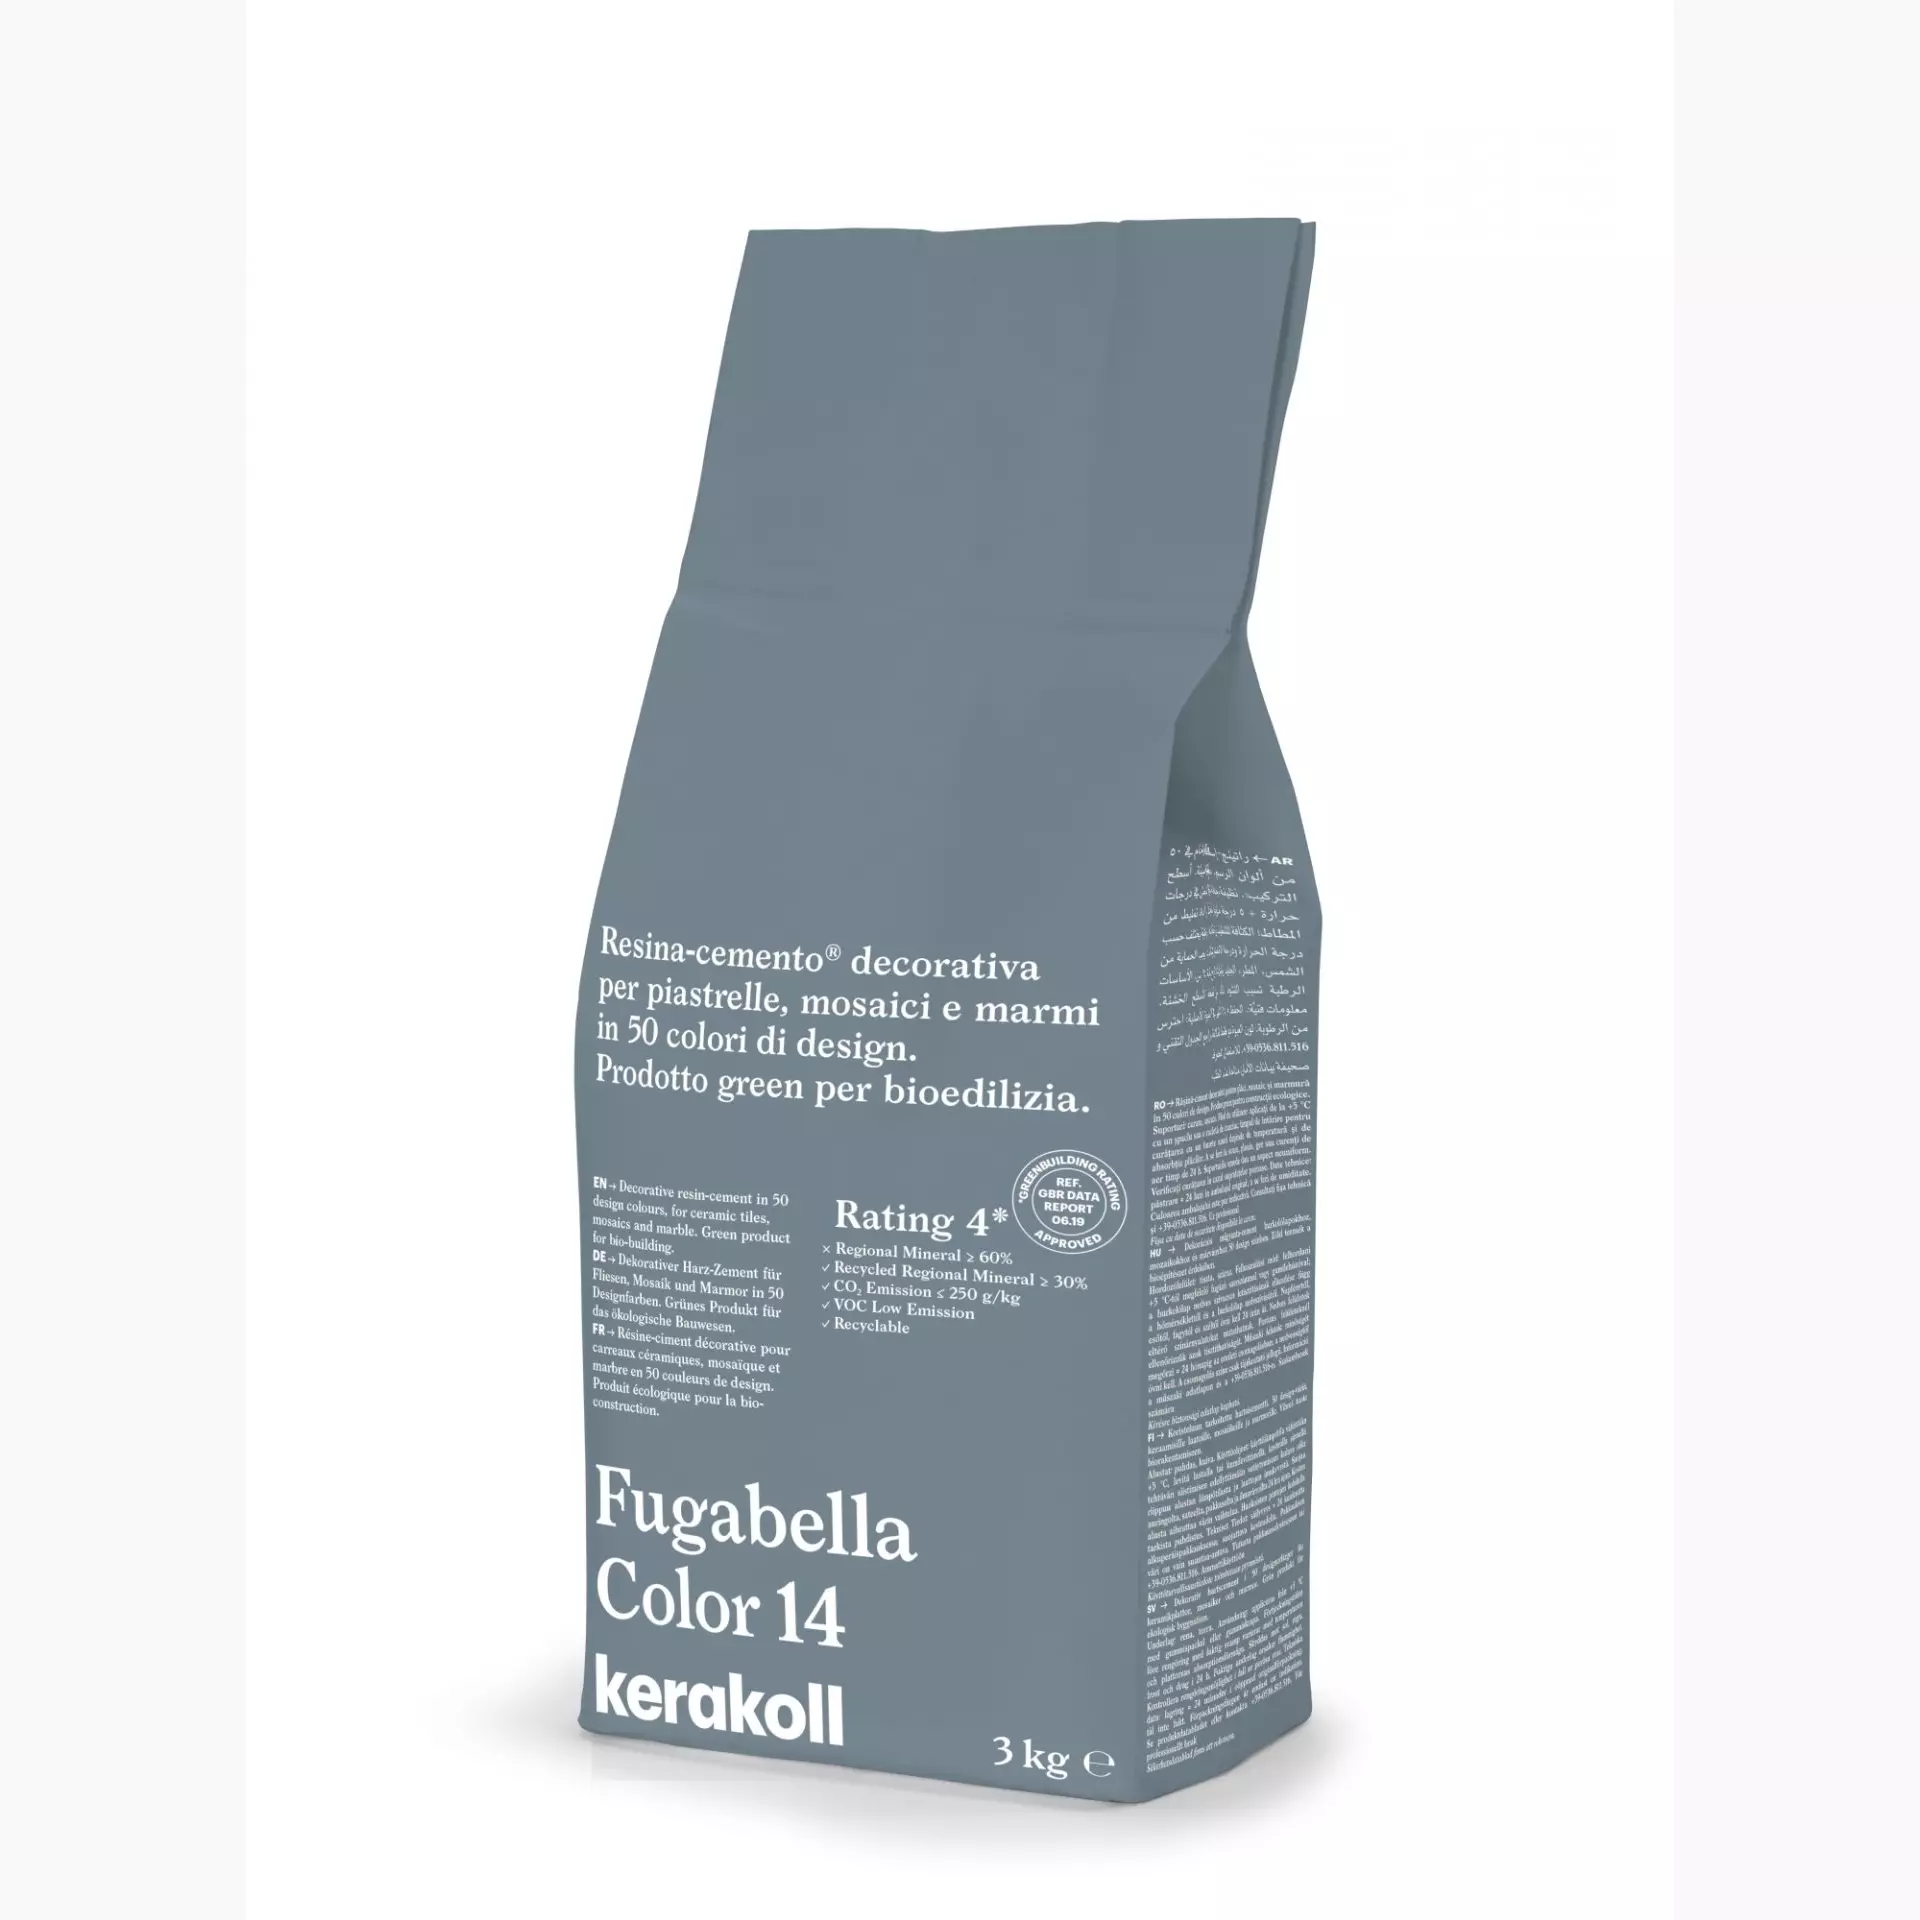 Kerakoll Fugabella Color - 14 - 3kg